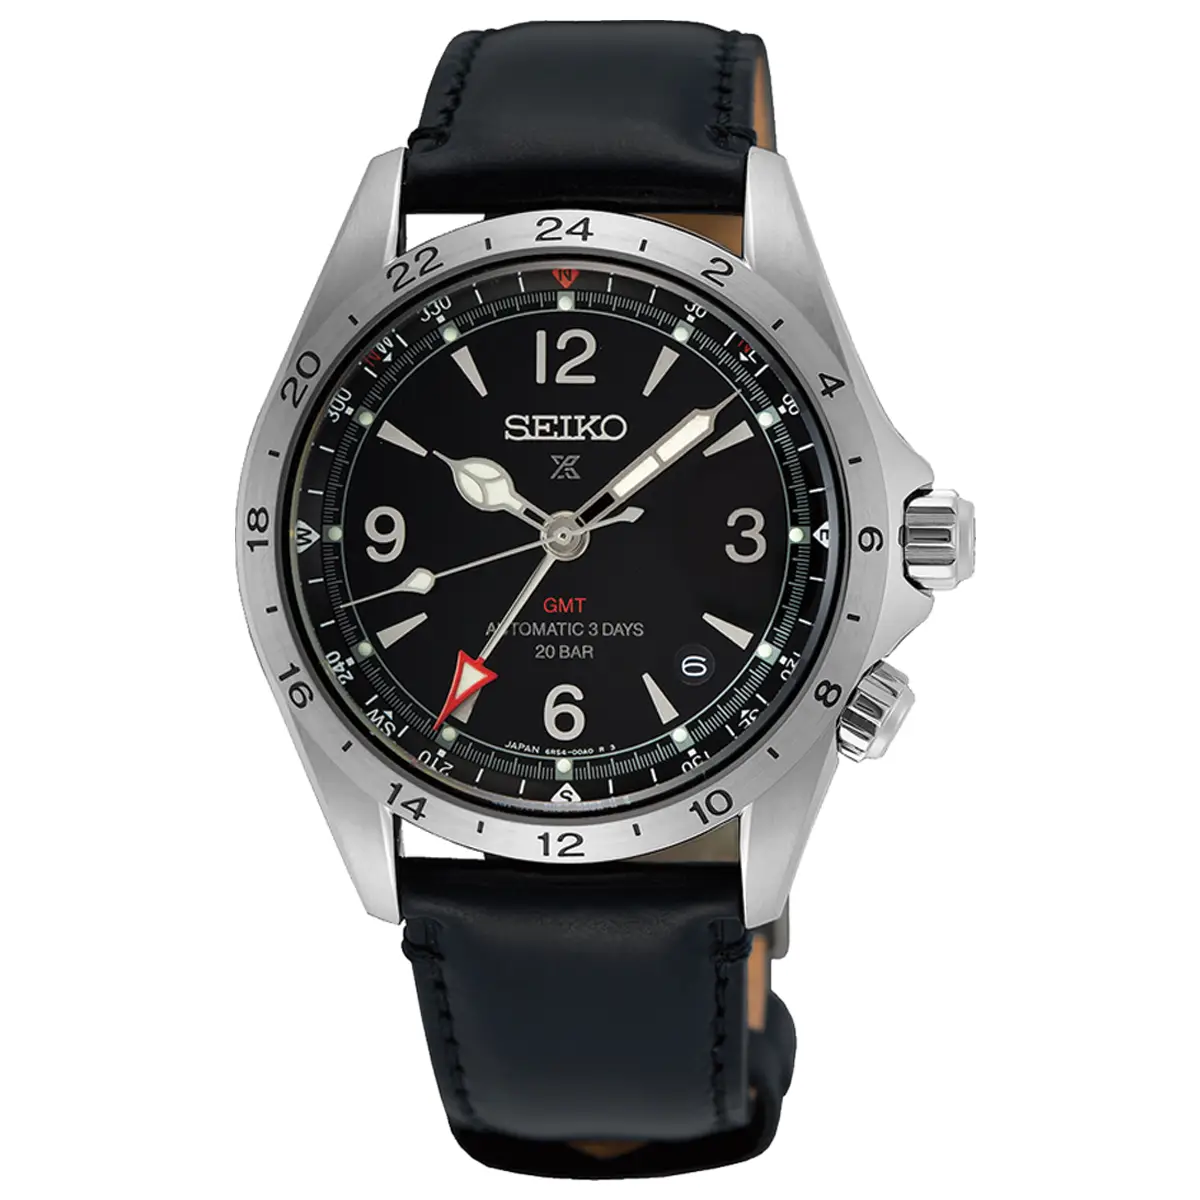 Đồng hồ Seiko Prospex Land GMT SPB379 mặt số màu đen. Dây đeo bằng da. Thân vỏ bằng thép.